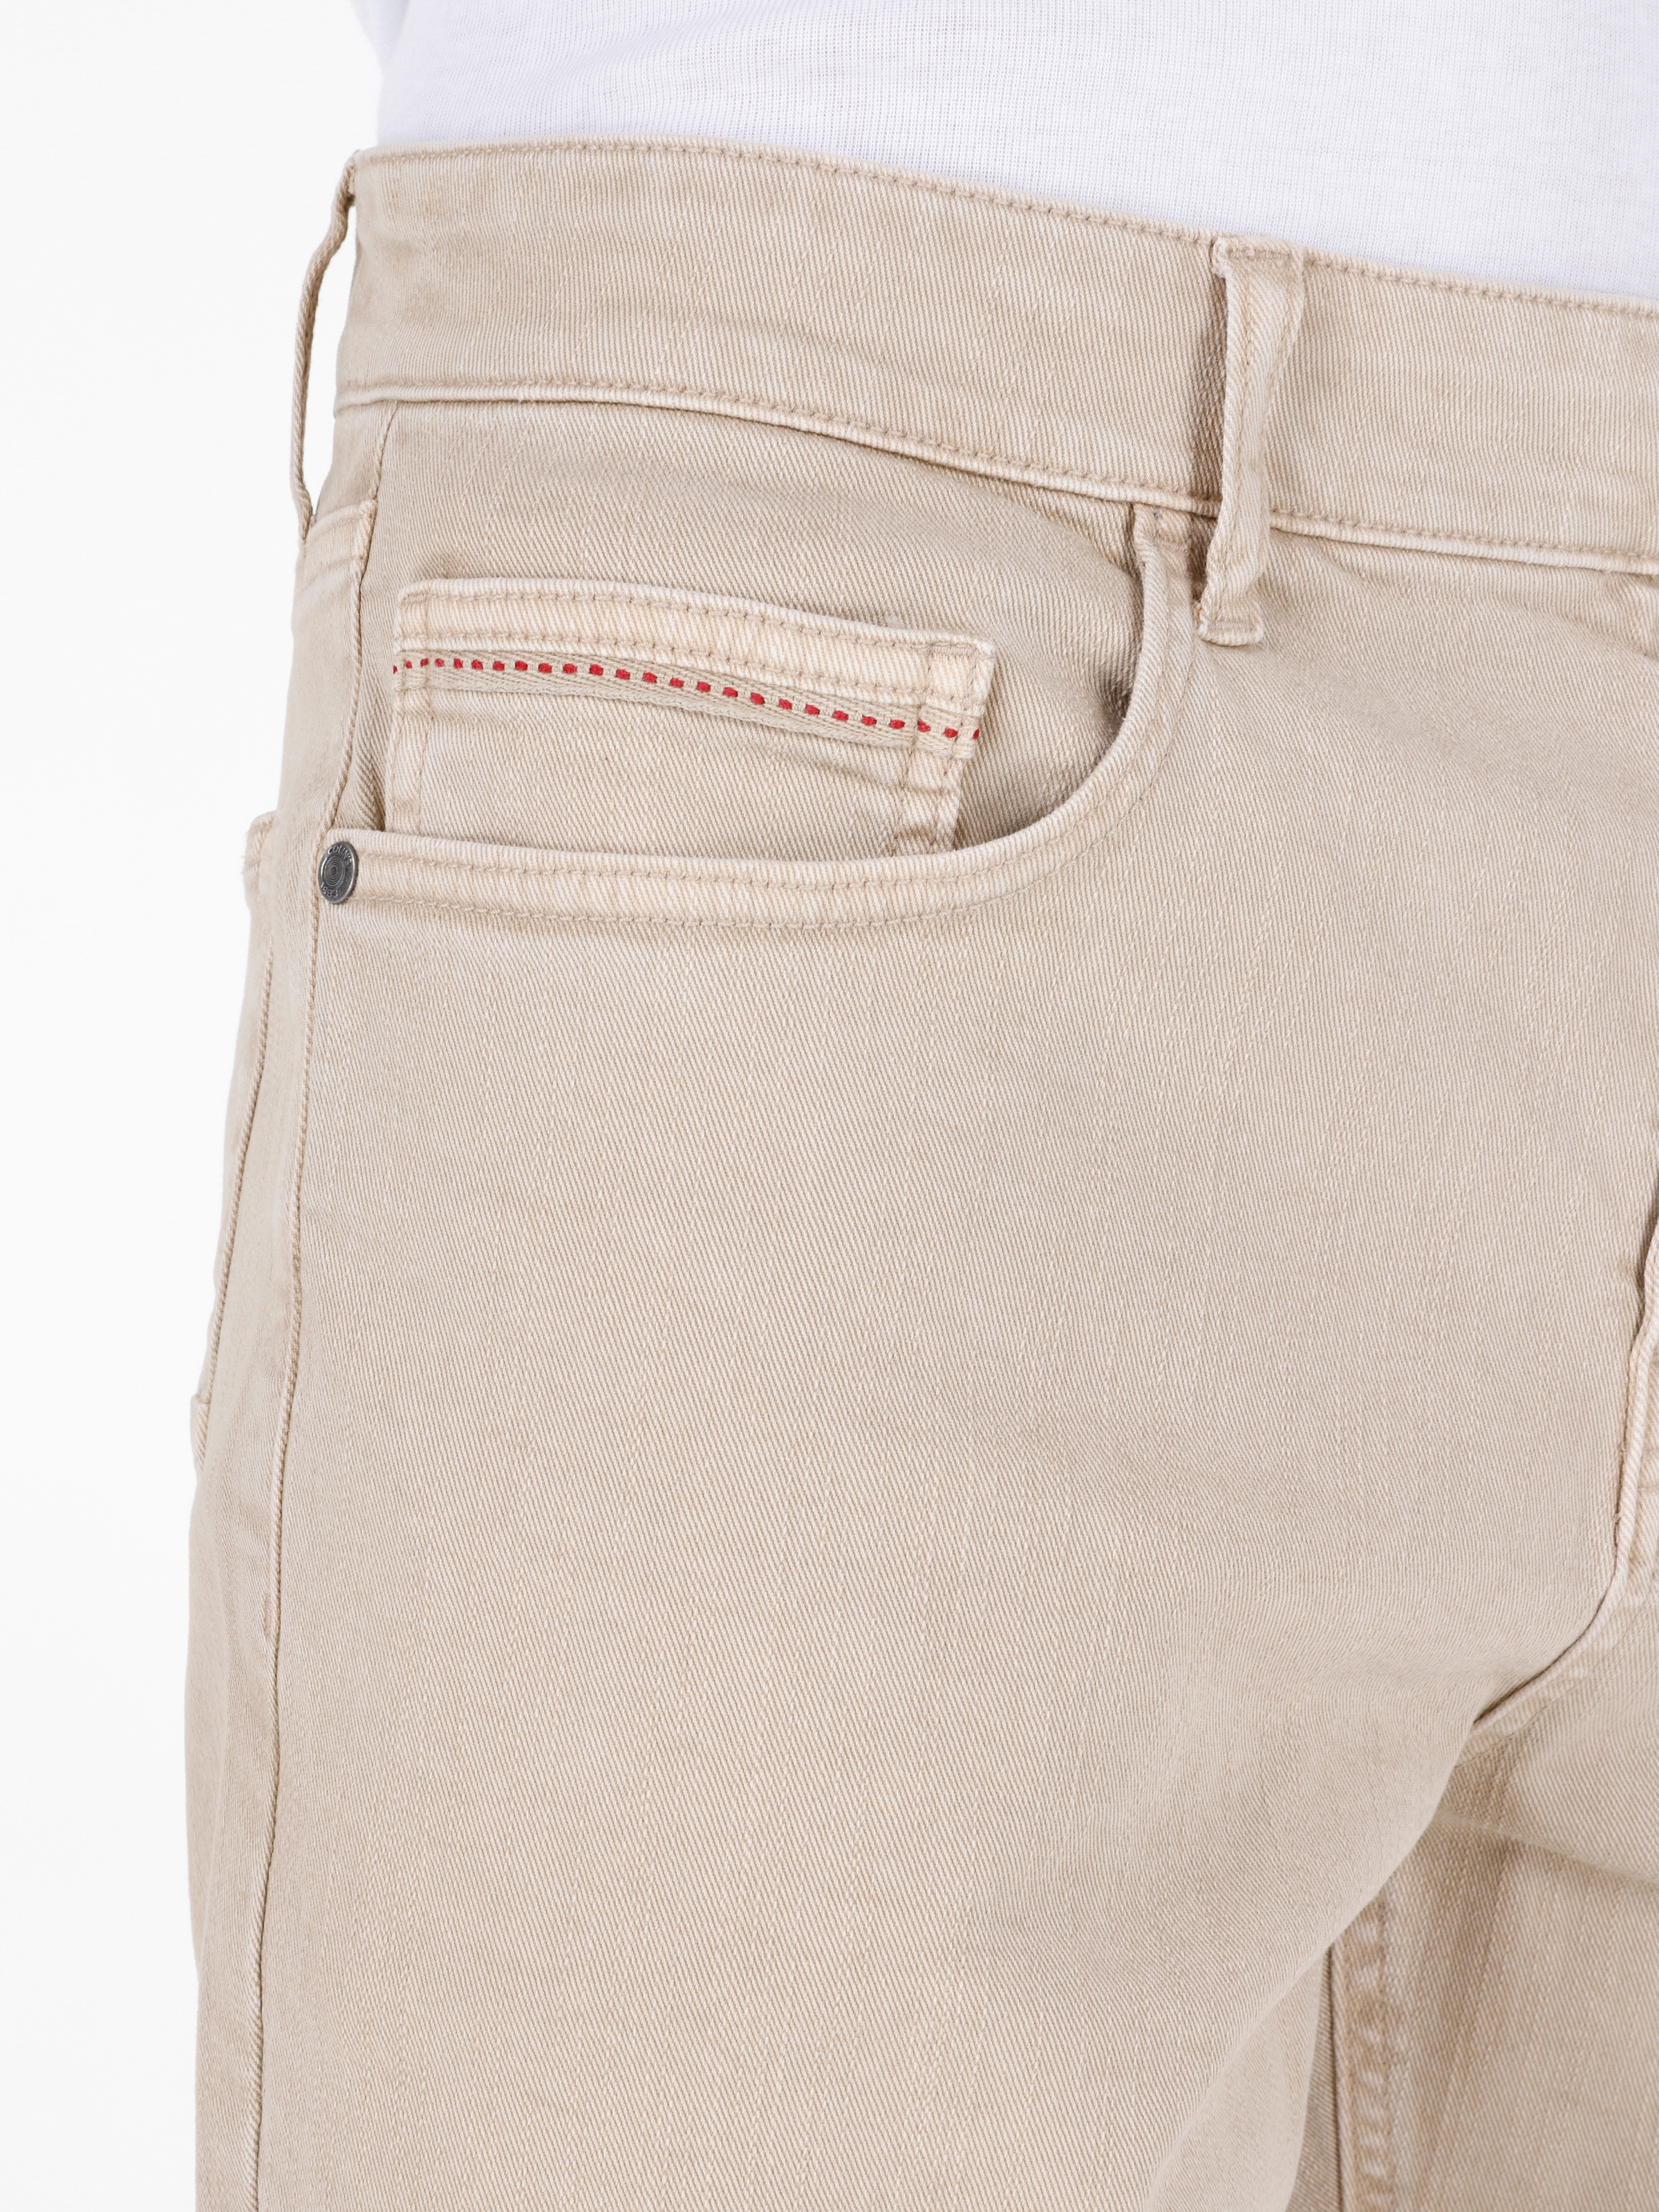 Afișați detalii pentru Short / Pantaloni Scurti De Barbati Bej Regular Fit  CL1069315